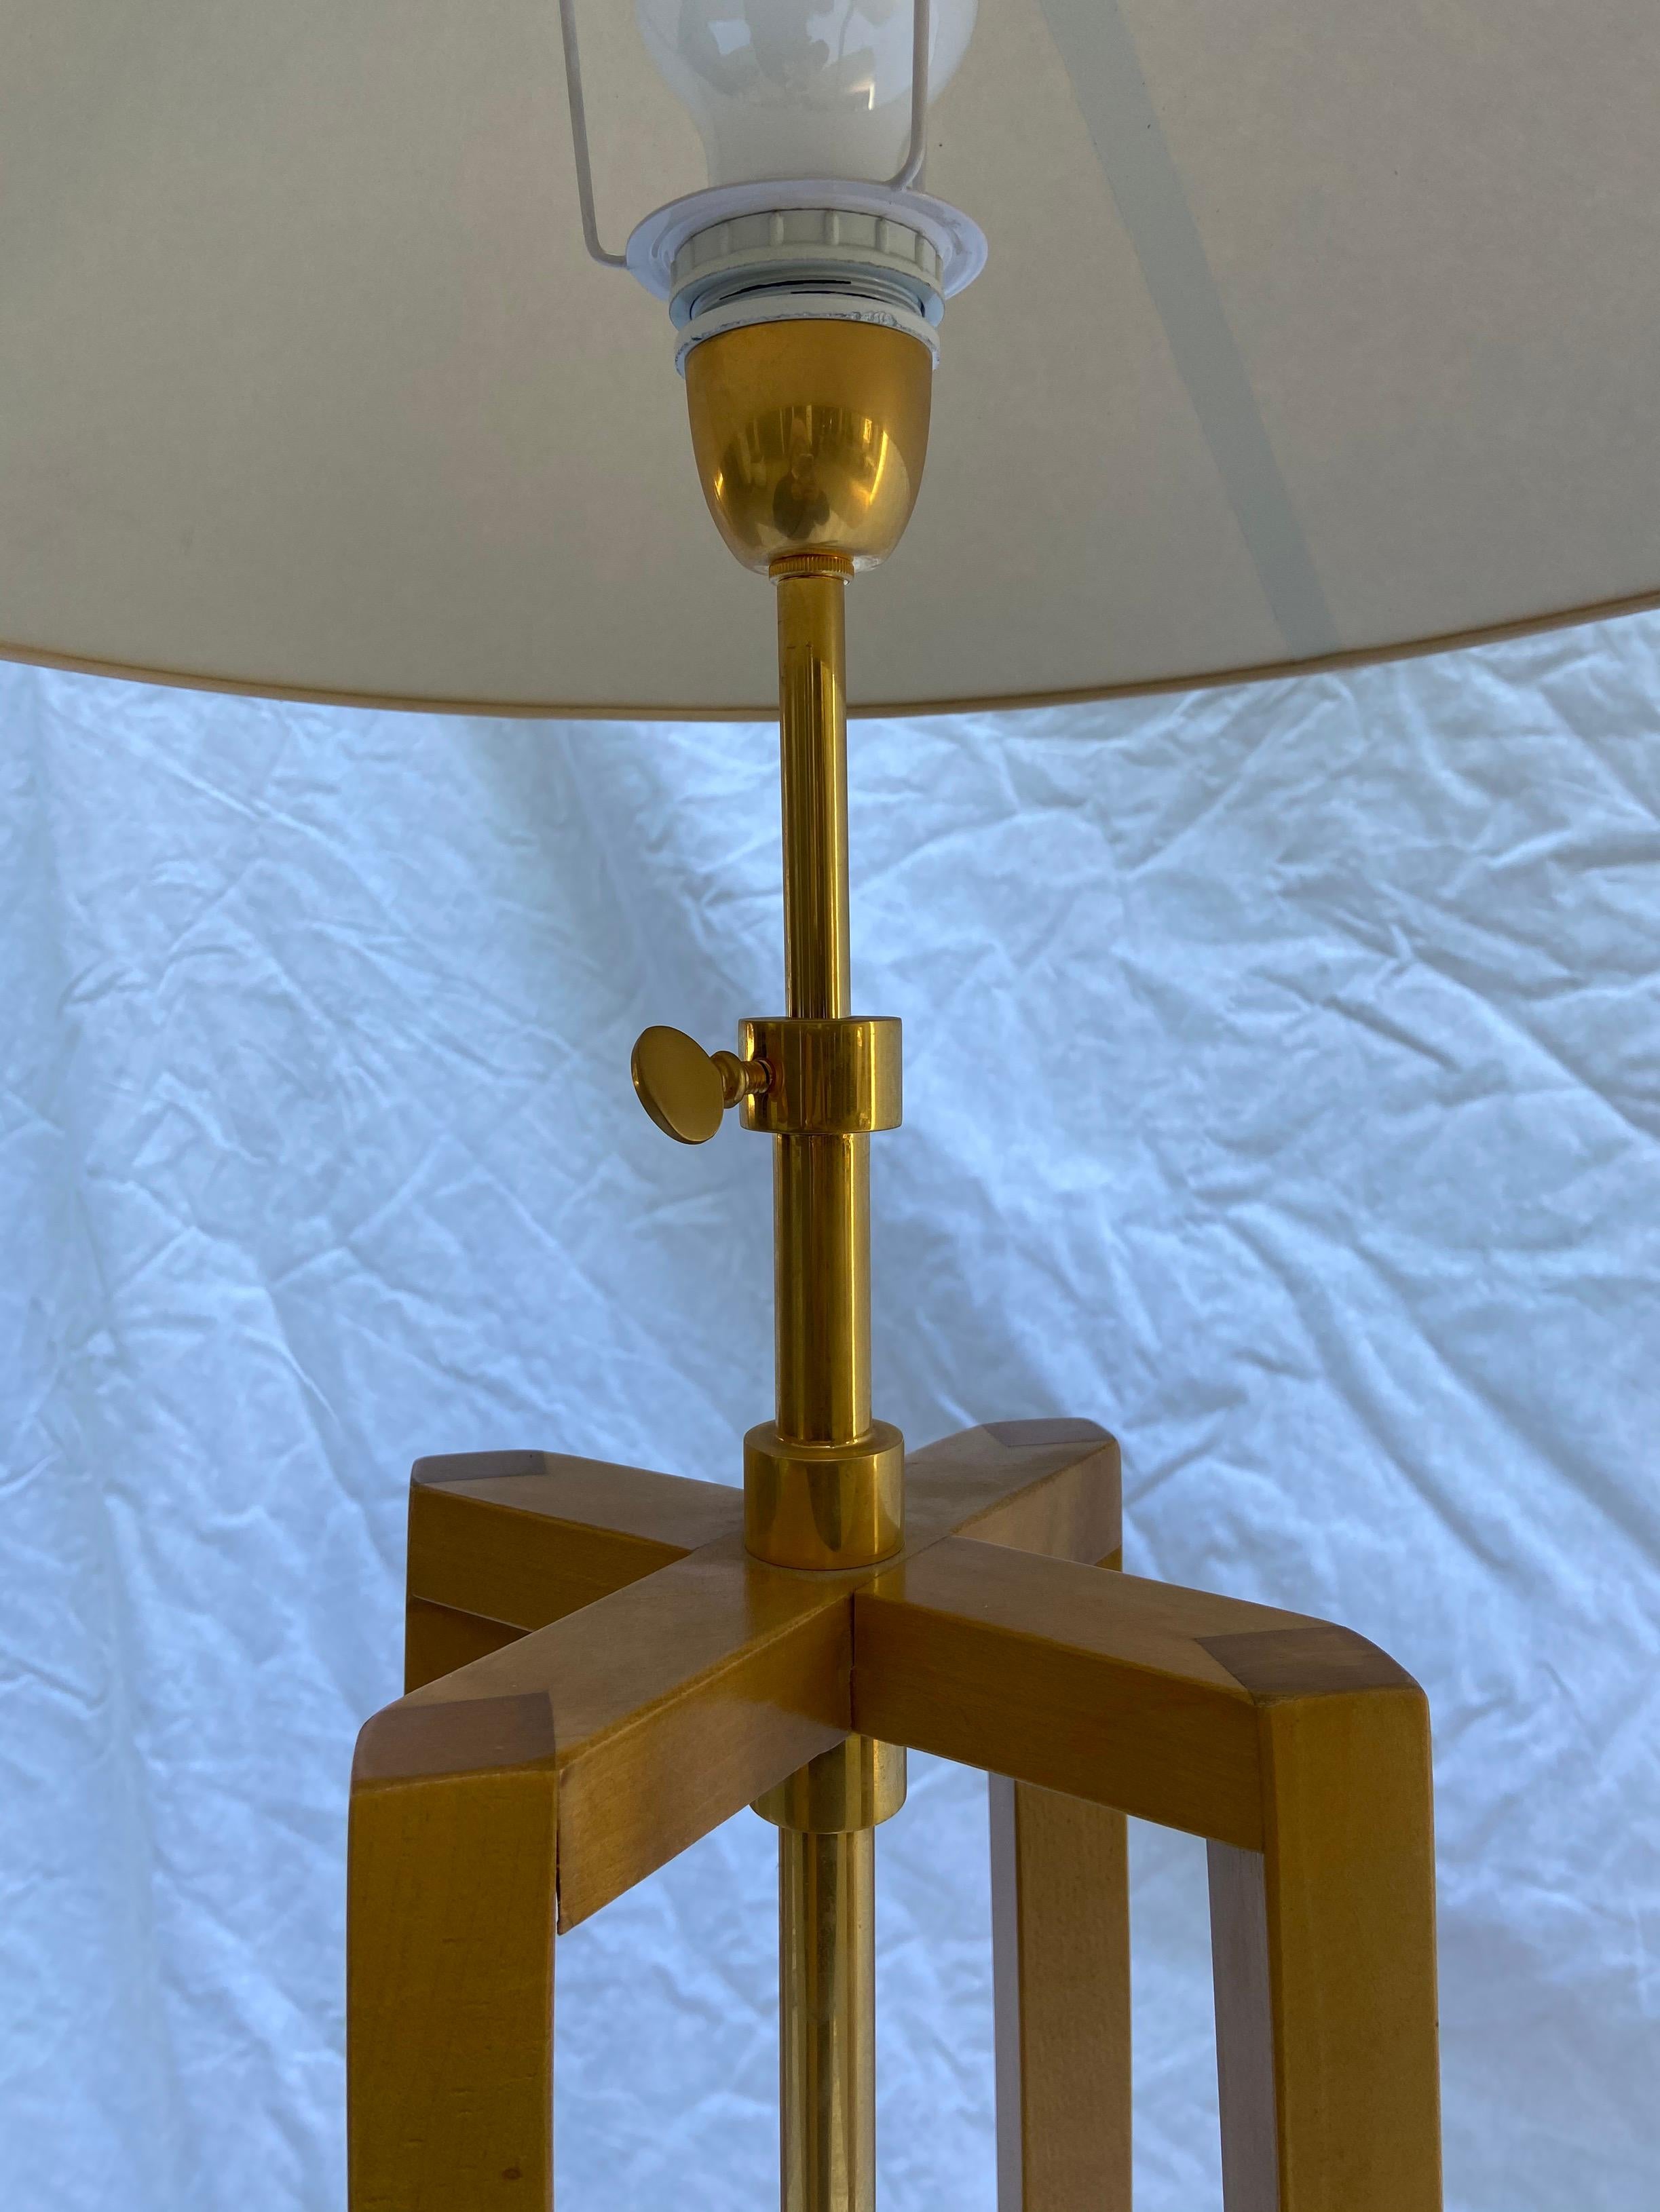 Philippe Hurel - Quadripod floor lamp
Circa 2000

Wood and brass

Measures: H 146 x D 50 cm.
 